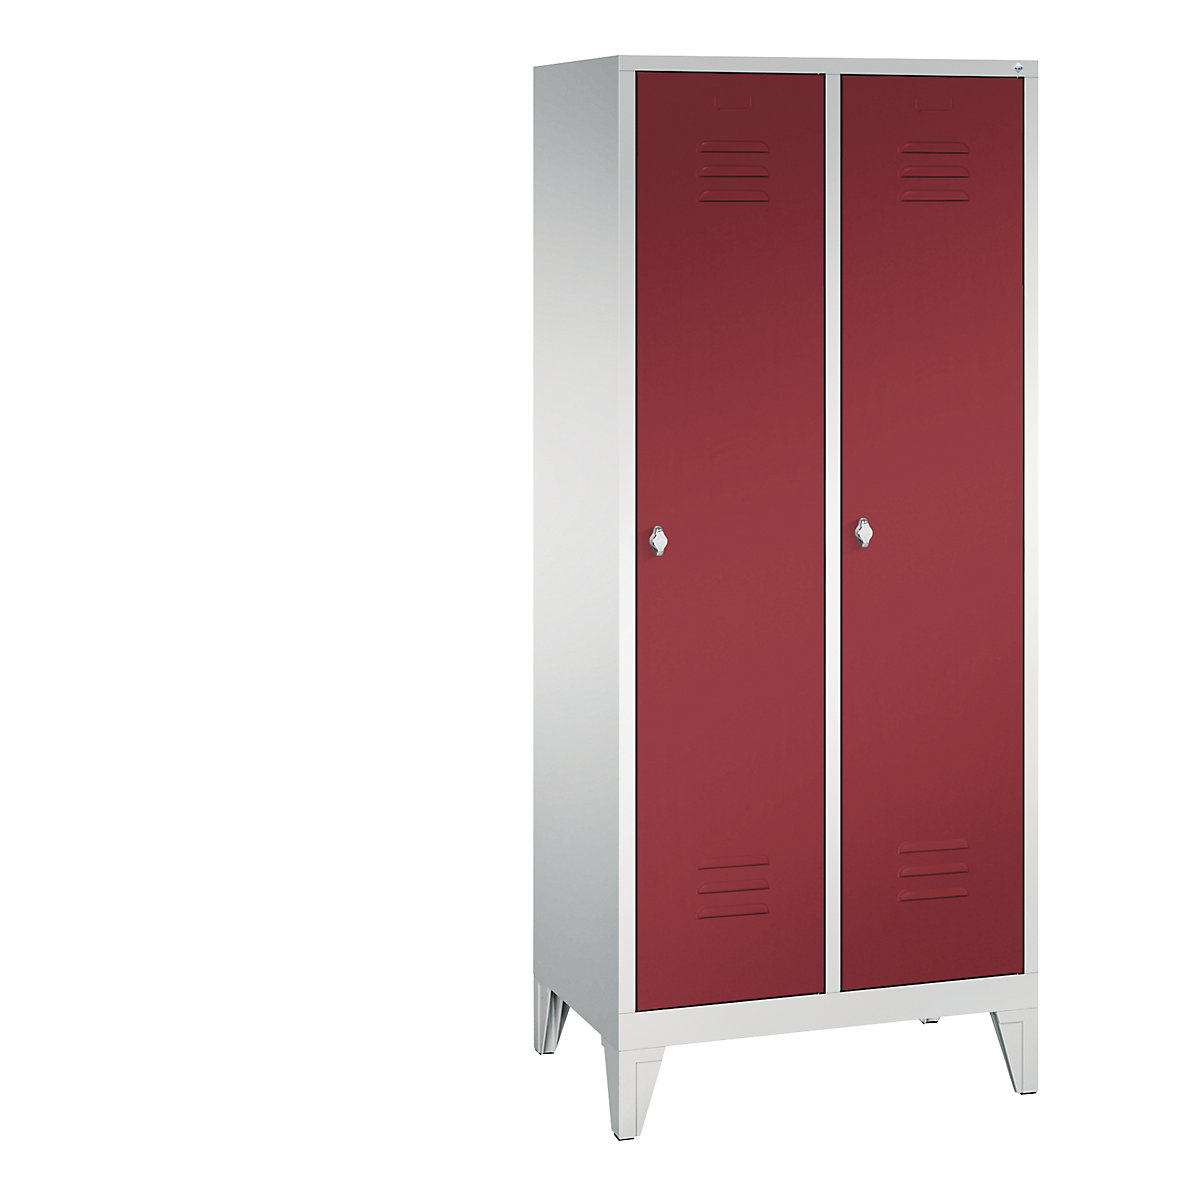 CLASSIC garderobna omara z nogami – C+P, 2 predelka, širina 400 mm/predelek, svetlo sive / rubinasto rdeče barve-14